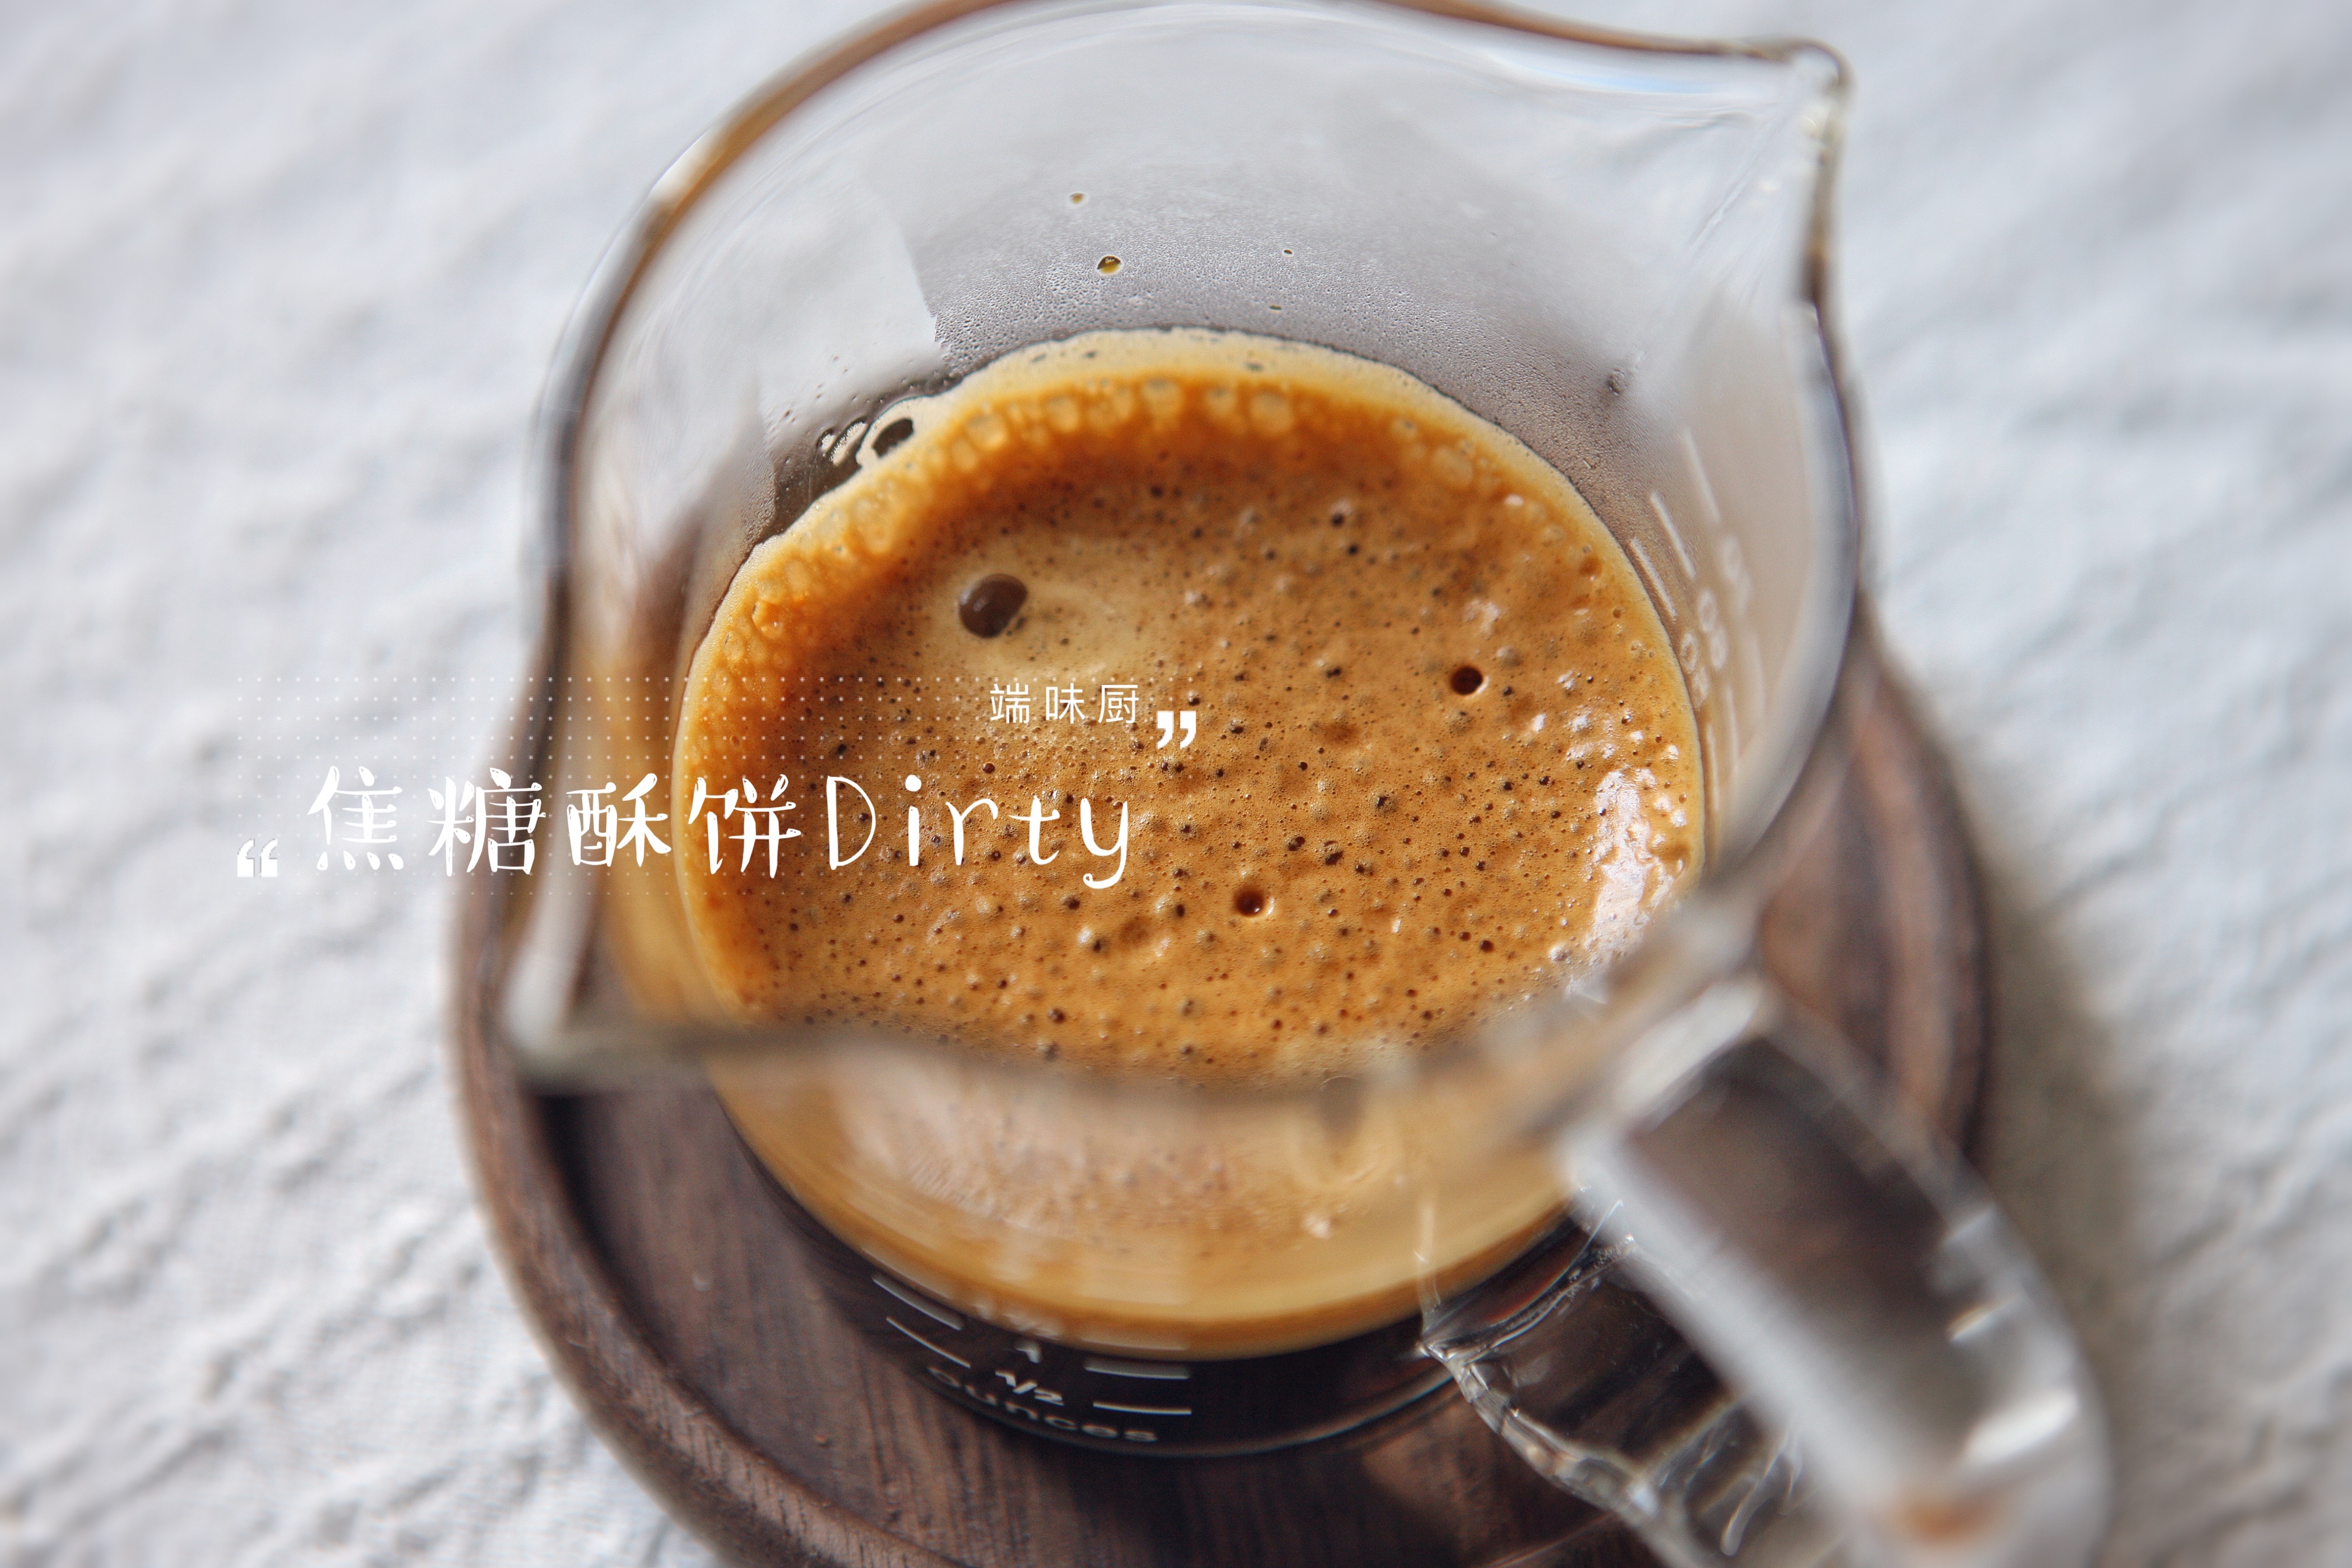 马克西姆咖啡机食谱——风靡整个韩国的网红咖啡——肉桂焦糖酥饼Dirty的做法 步骤12